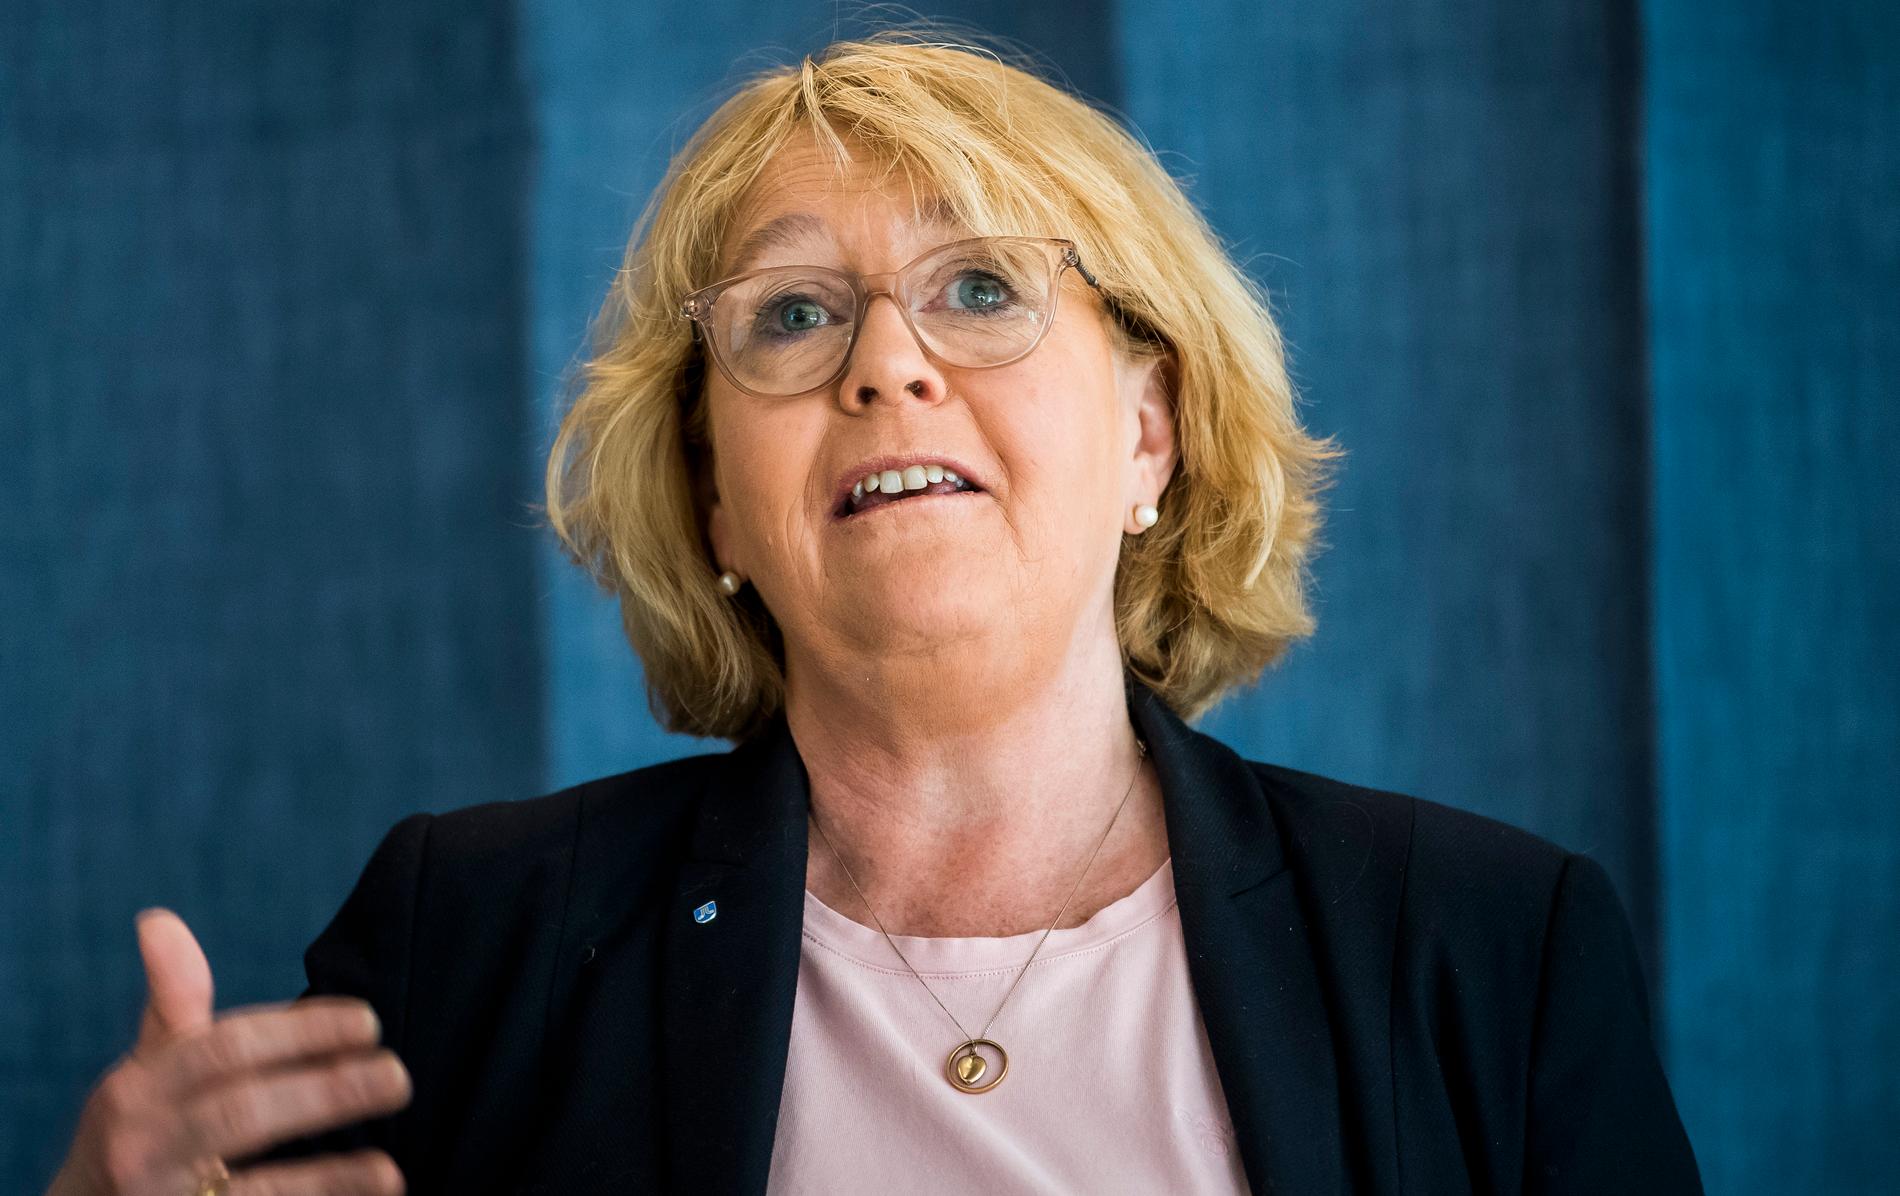 Stockholms finanslandstingsråd Irene Svenonius (M) tidigare kommunikationschef arbetar idag för Kry, som har fått ta över sjukvårdsupplysningen 1177 i regionen.